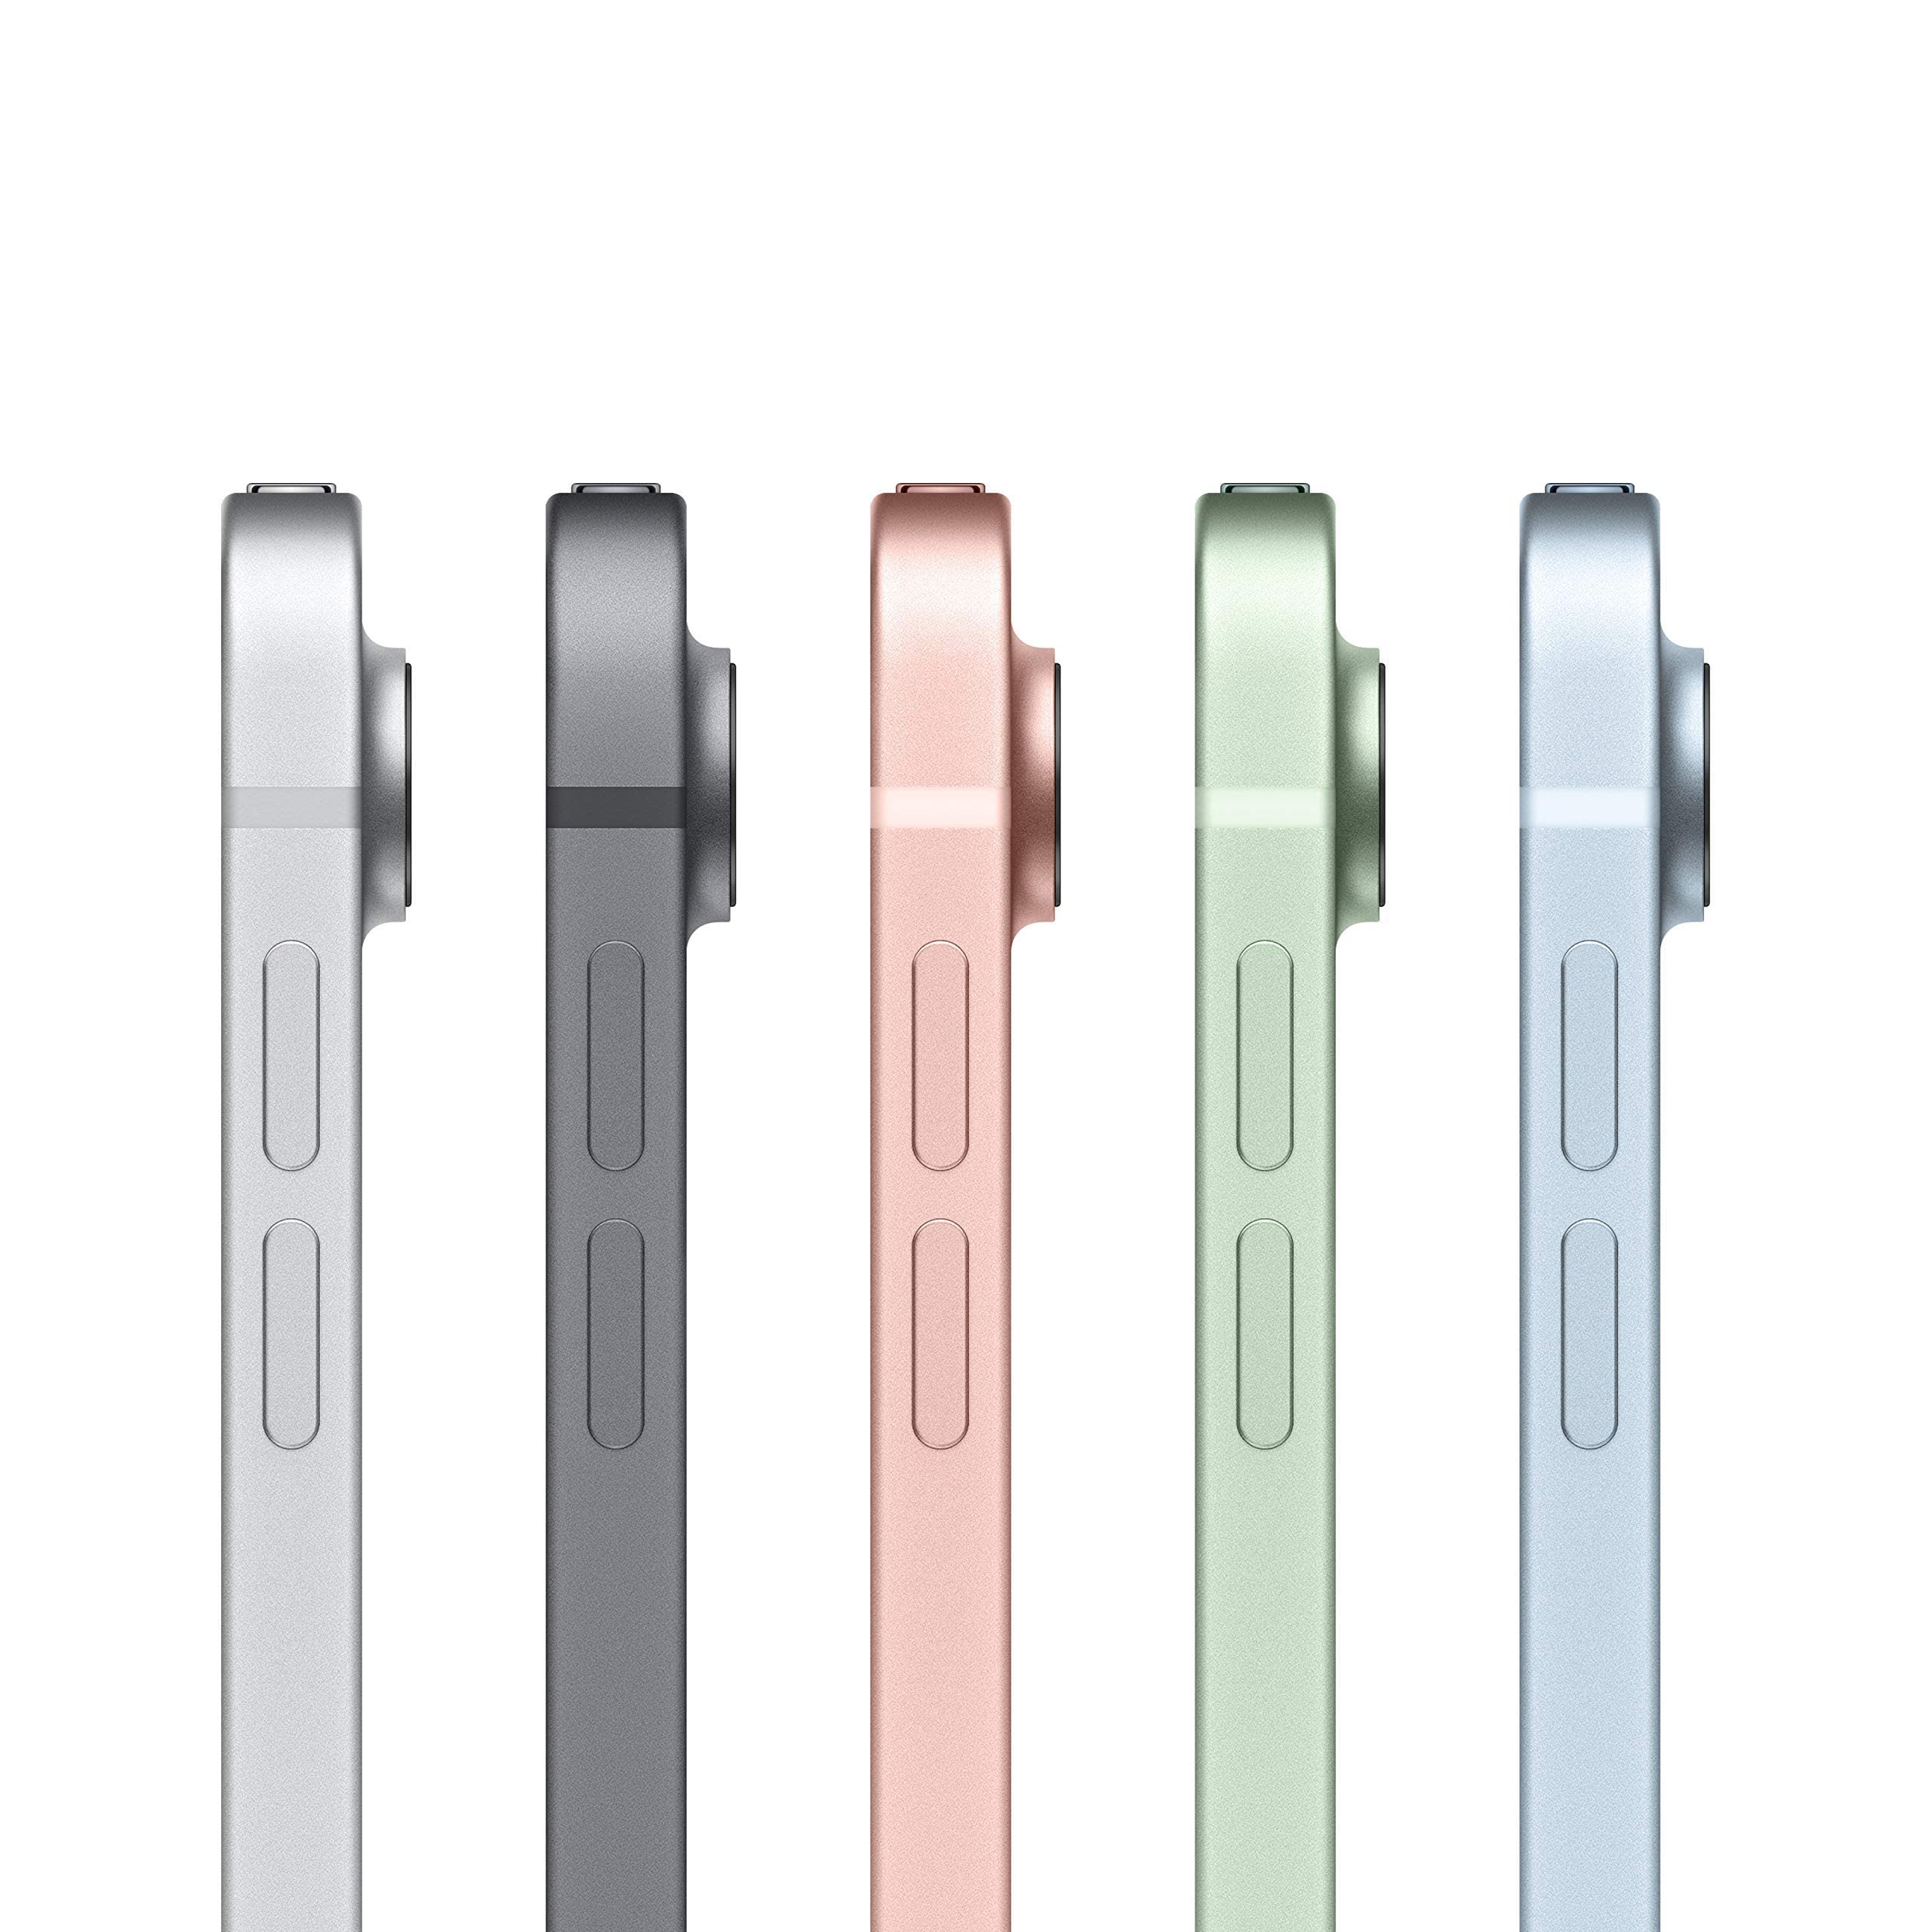 Apple iPad Air (10.9-inch, Wi-Fi + Cellular, 64GB) - Silver (Latest Model, 4th Generation) (Renewed)